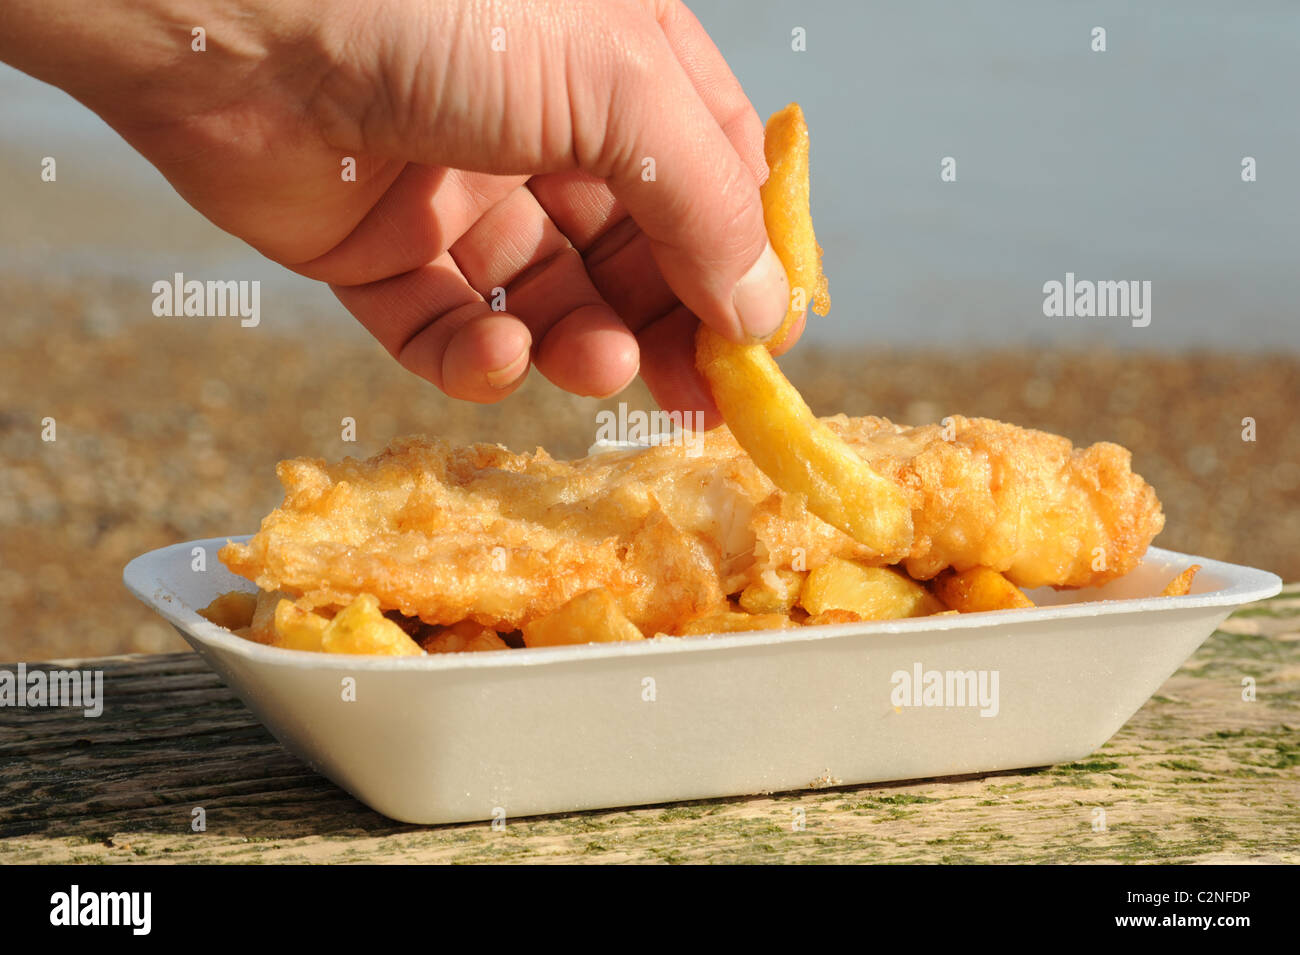 Fish and chips par la mer Banque D'Images